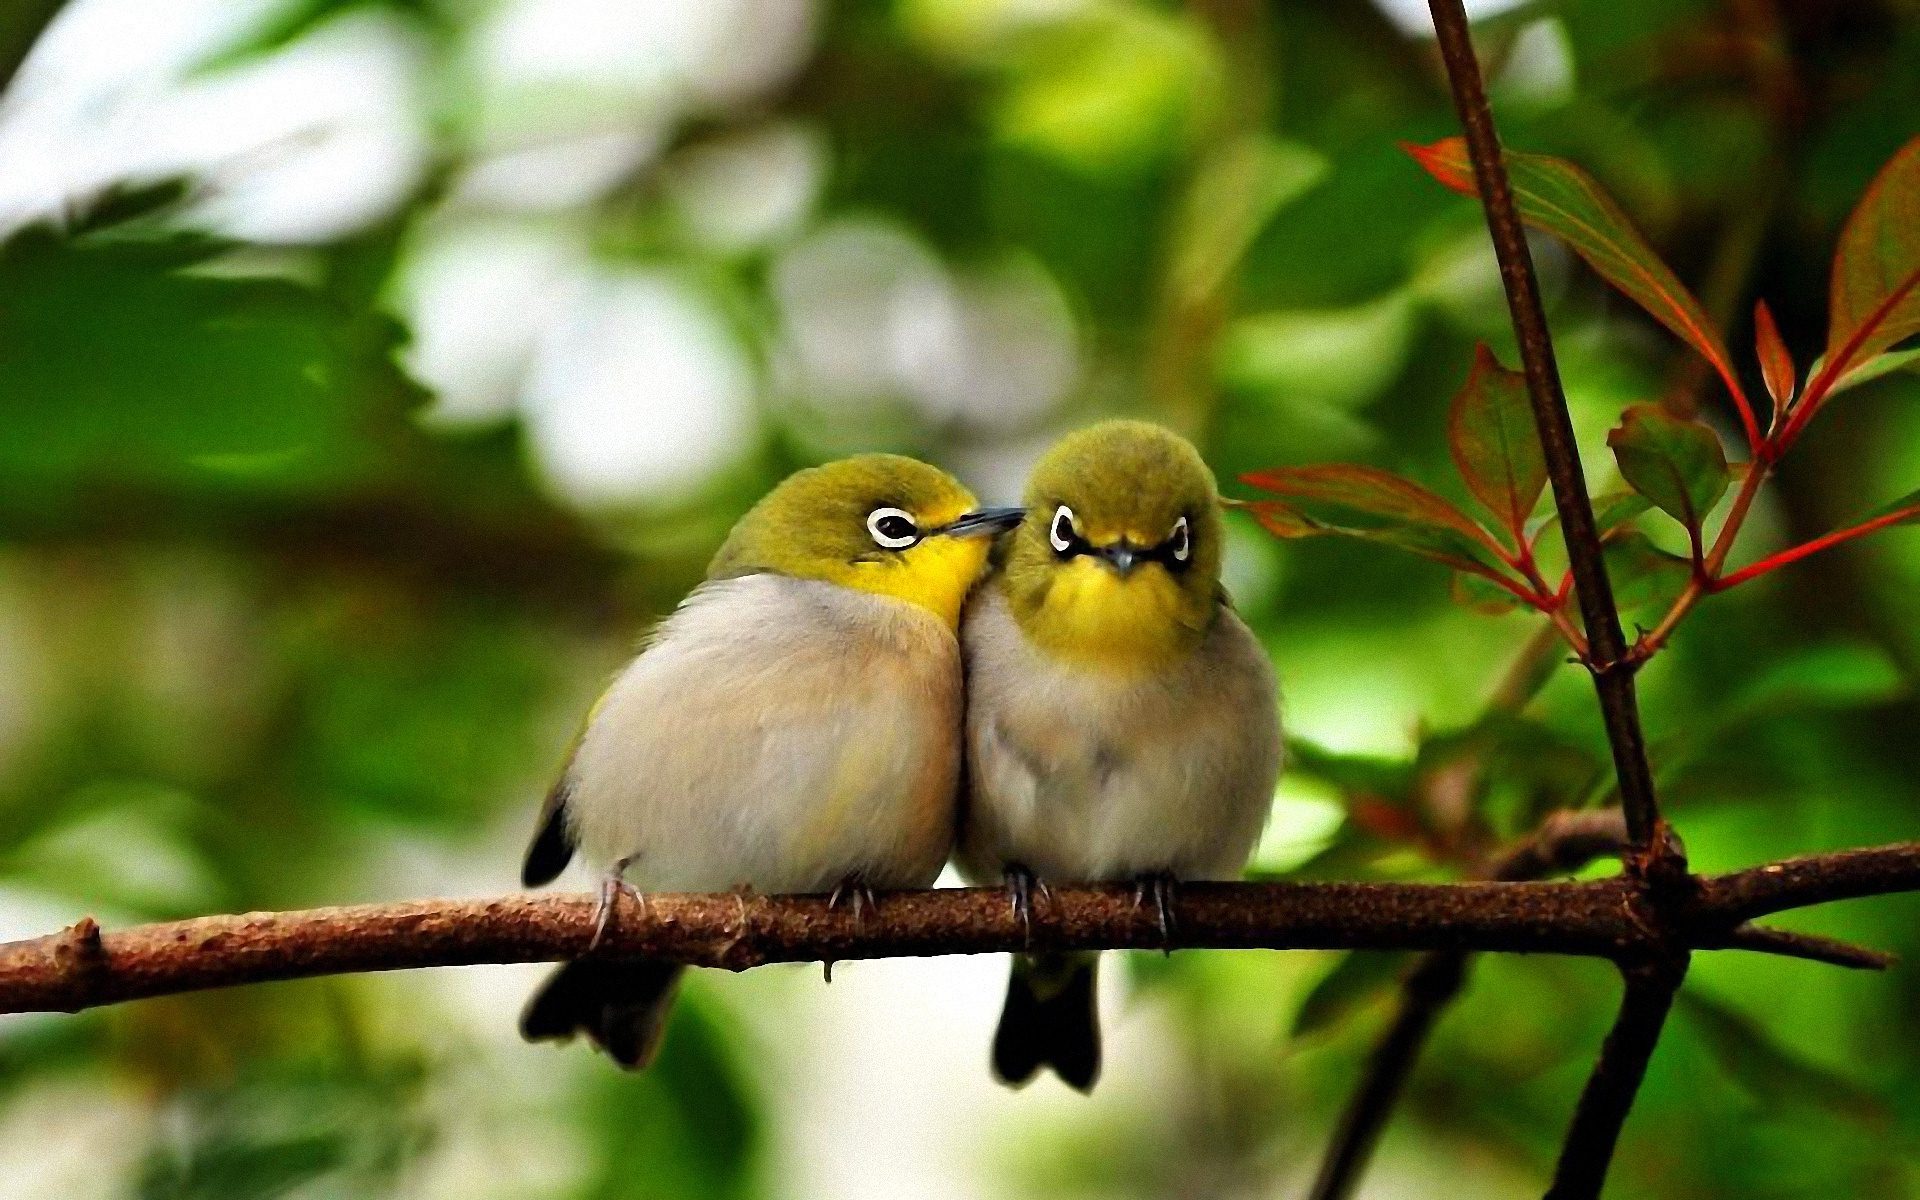 Cute Birds On A Branch - HD Wallpaper 